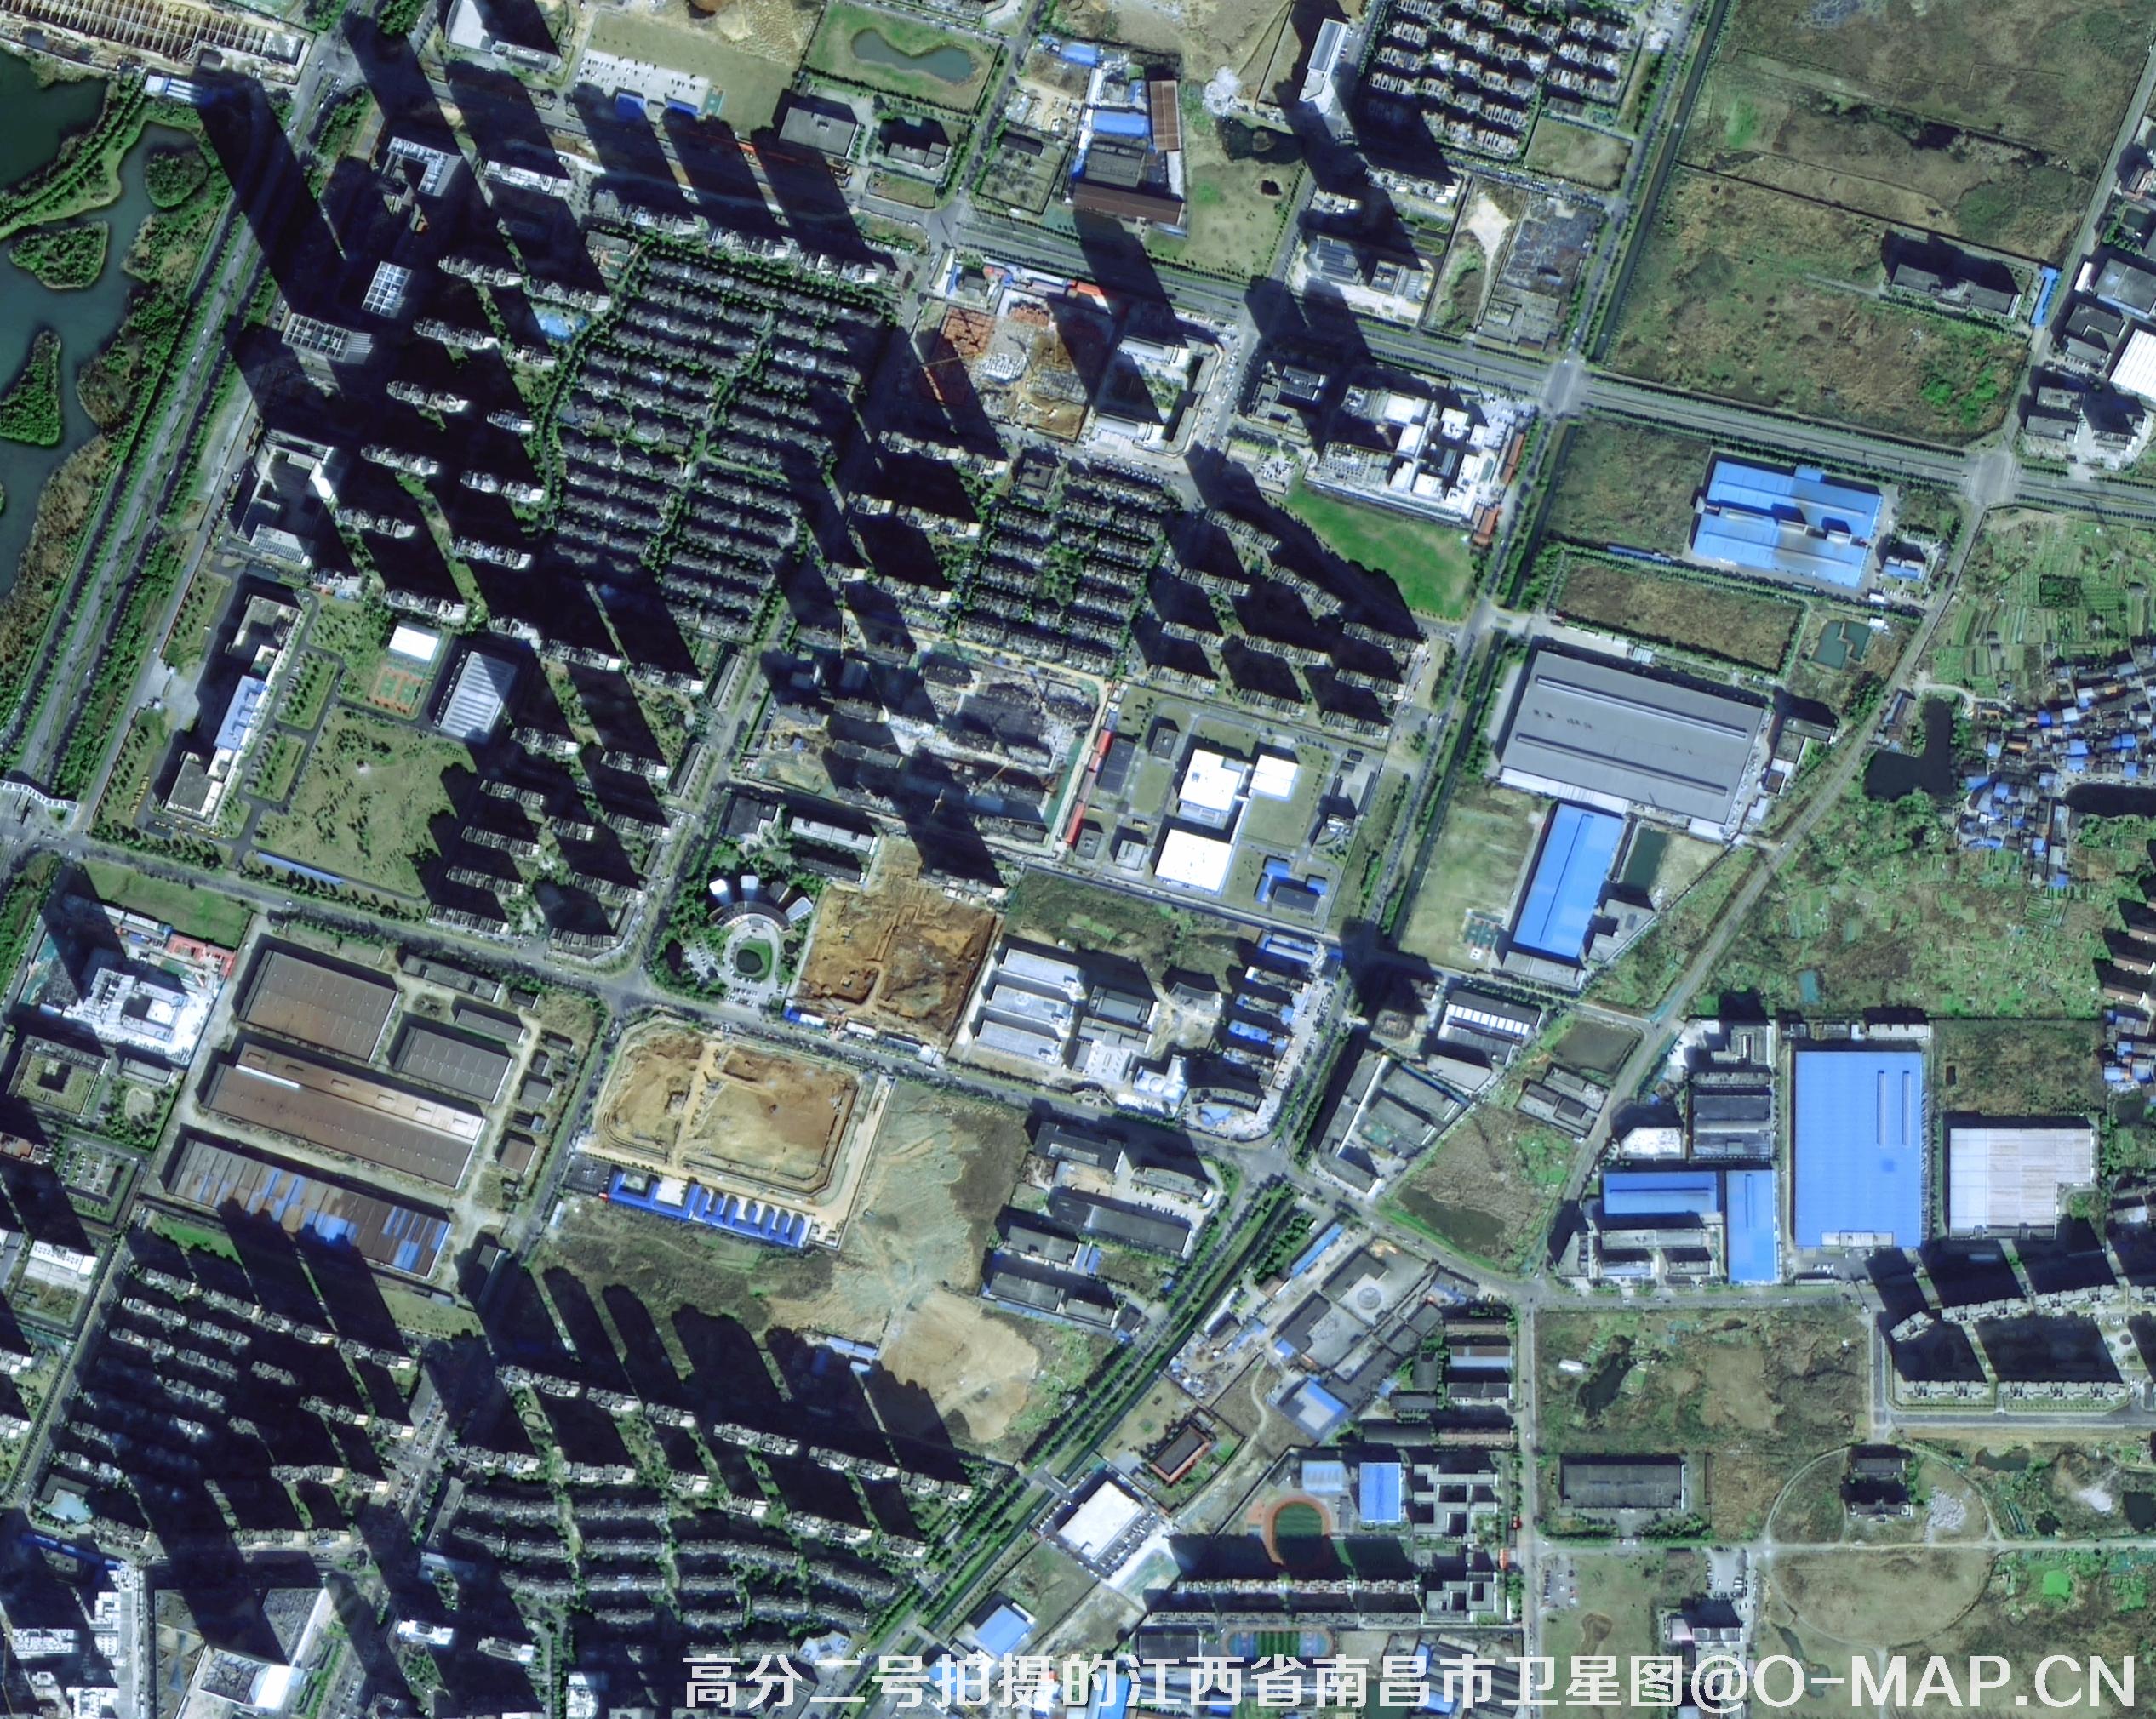 0.8米卫星图-用于土地征迁官司举证材料